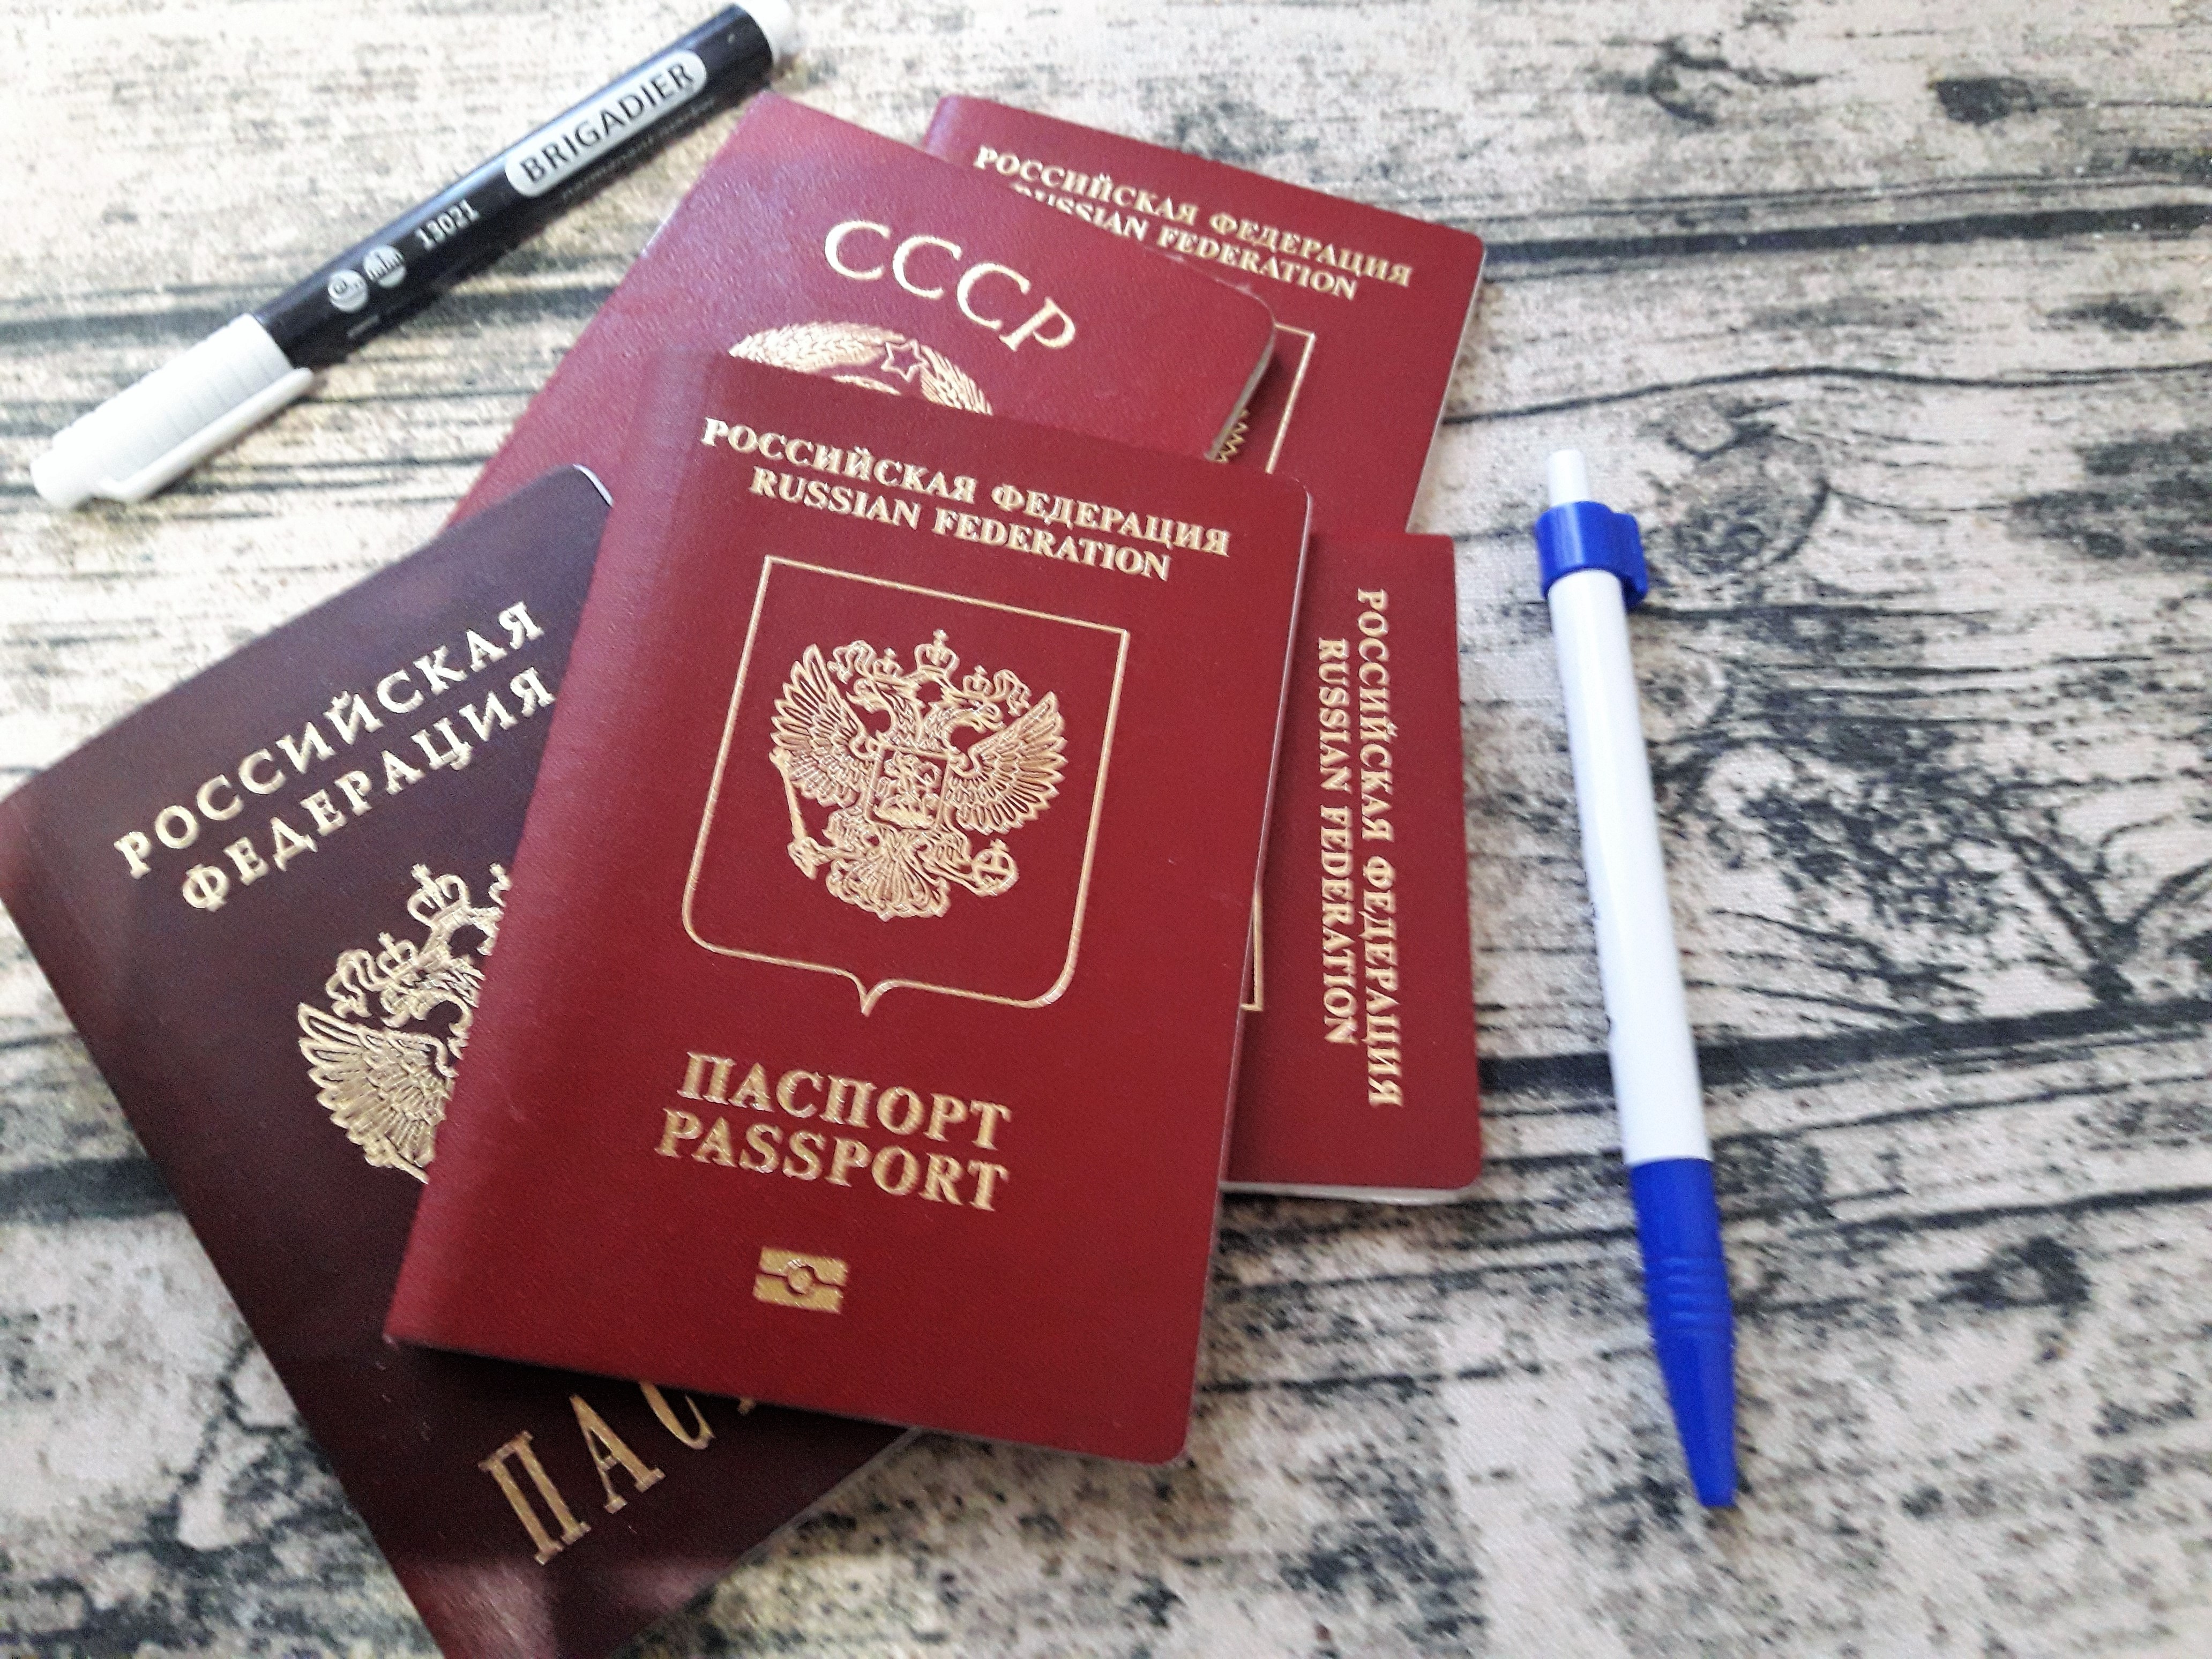      Контроль за сроком действия российских паспортов при въезде в Турцию 